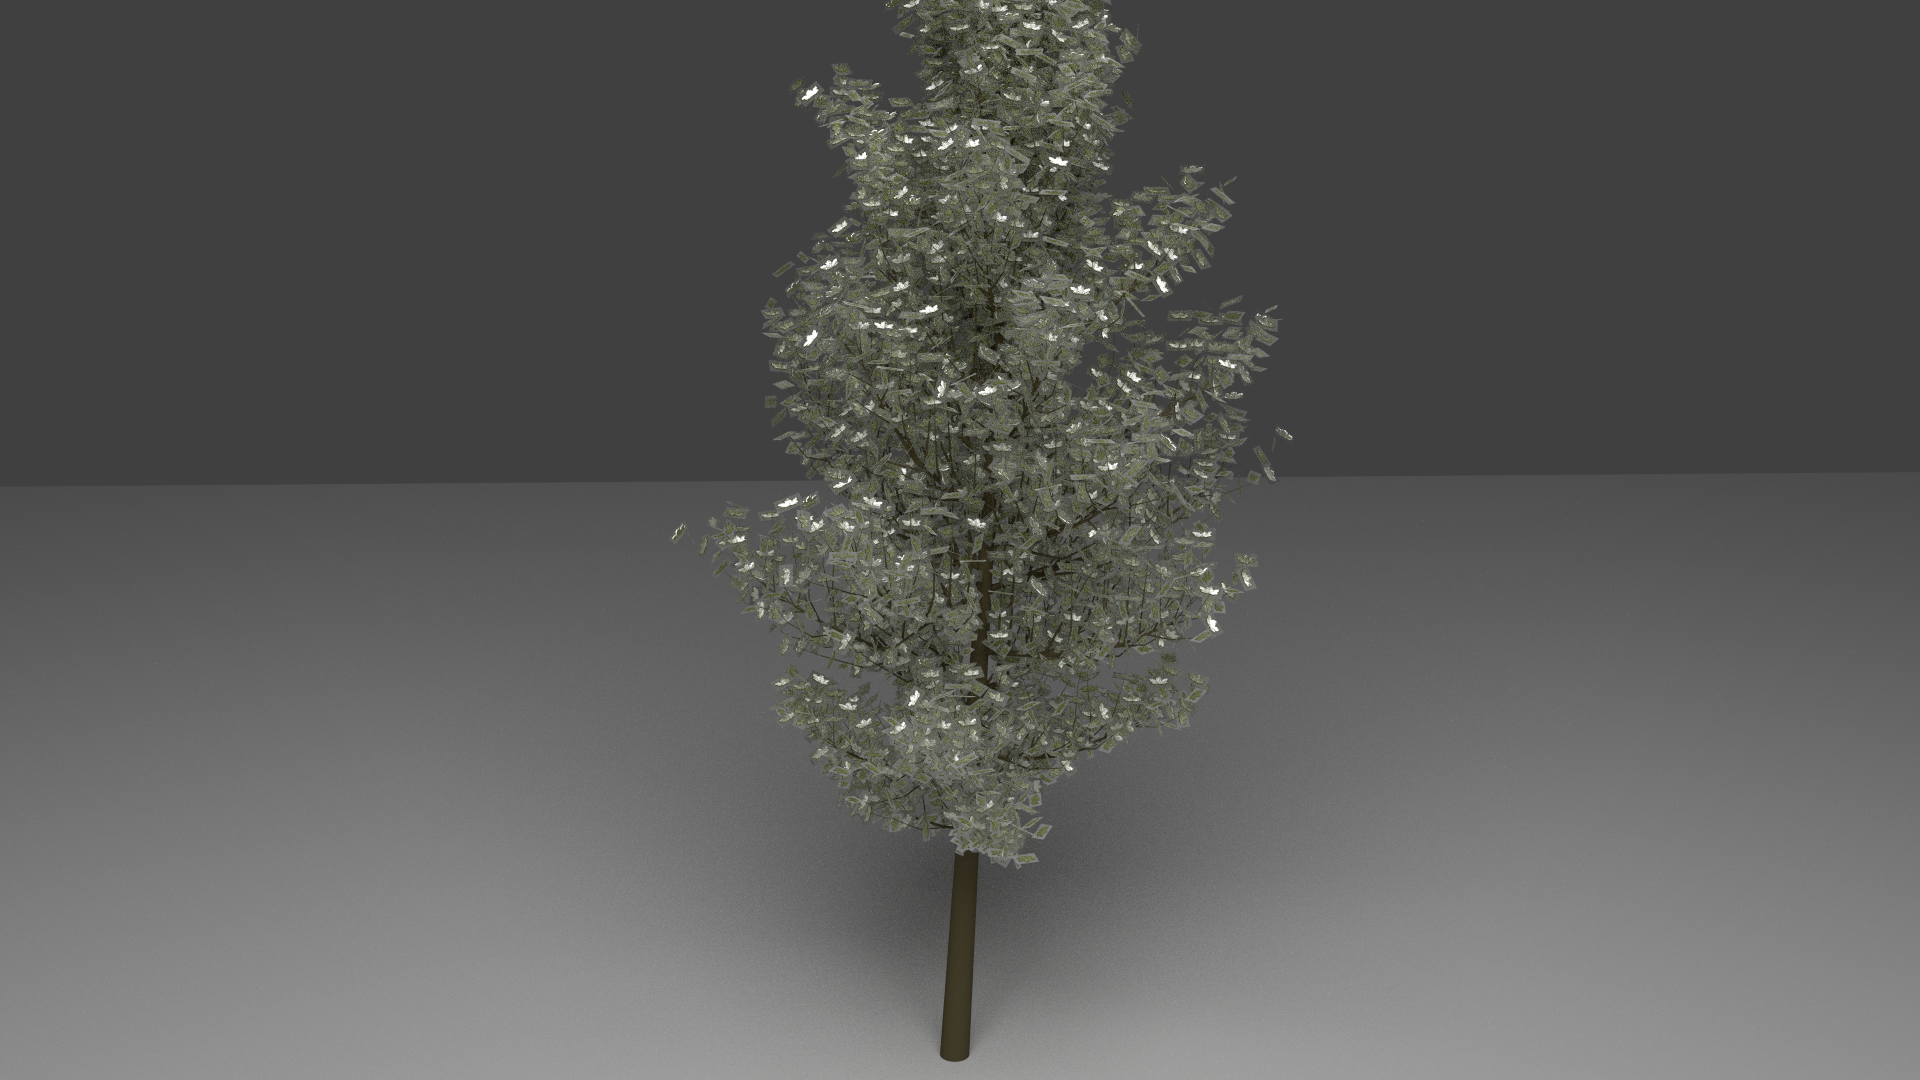 General 1920x1080 Blender trees simple background CGI digital art